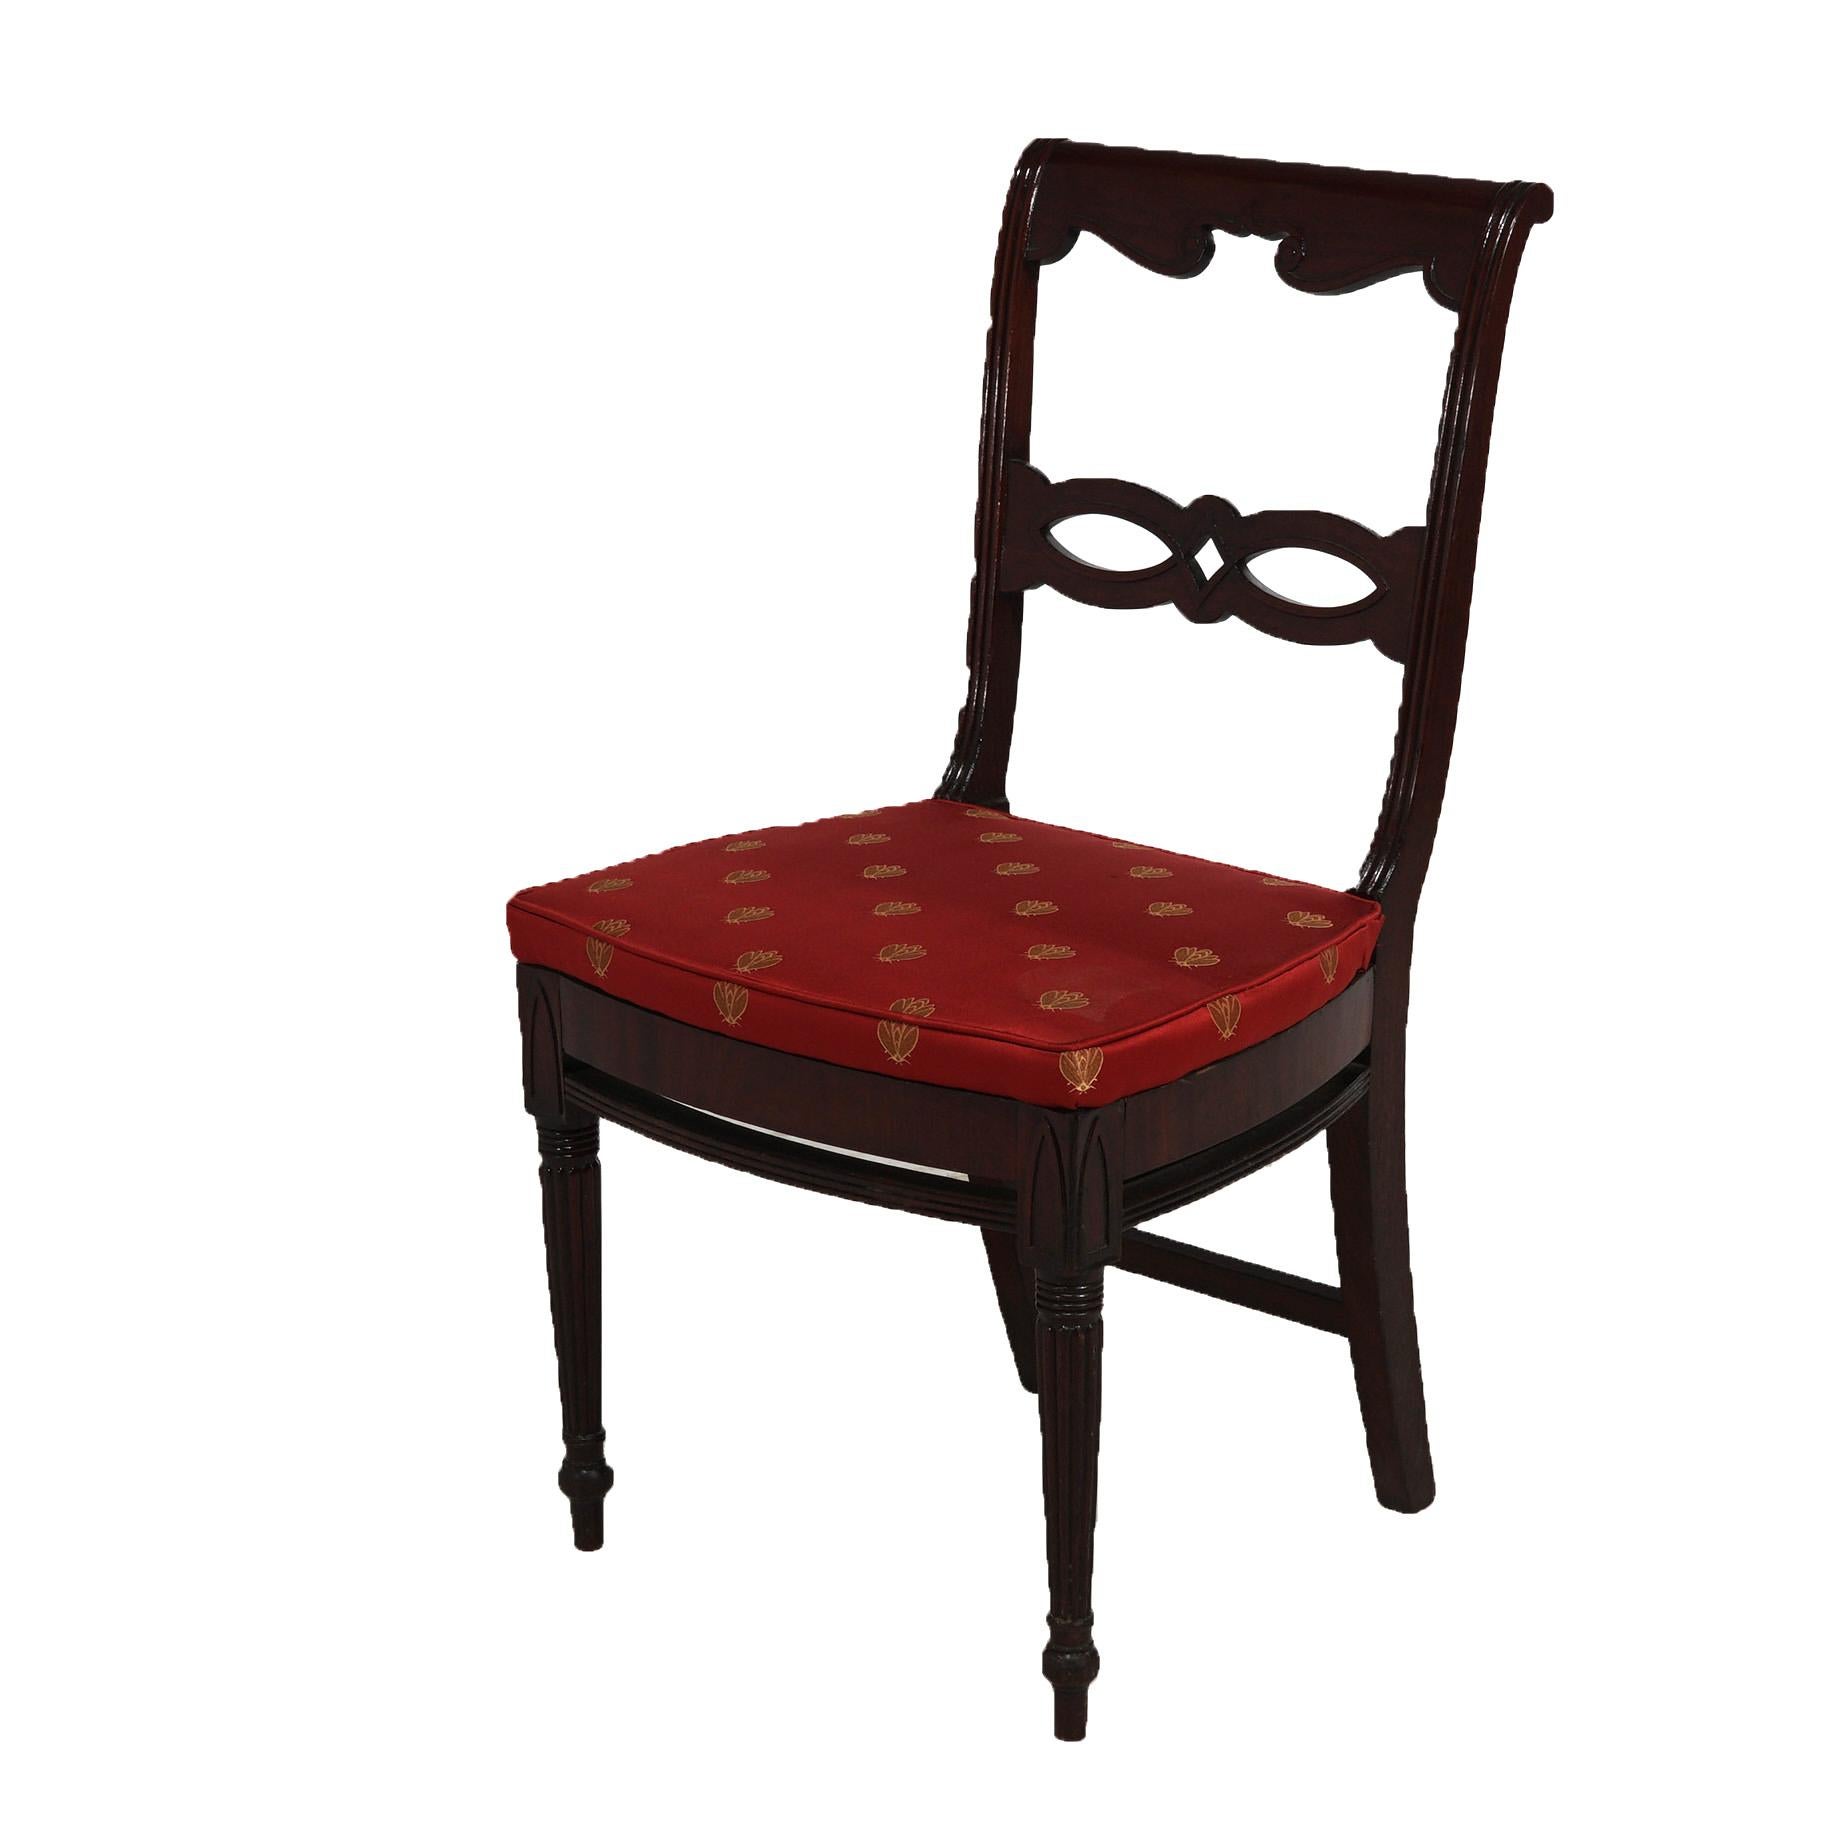 Ein antikes Paar Sheraton Beistellstühle bietet Mahagoni-Konstruktion mit Schnecke und stilisierten Lattenrücken über Sitz mit gepolsterten Kissen und auf gedrehten und geriffelten Beinen erhöht, c1830

Maße: 35''H x 19''B x 20,5''T; 18''SH